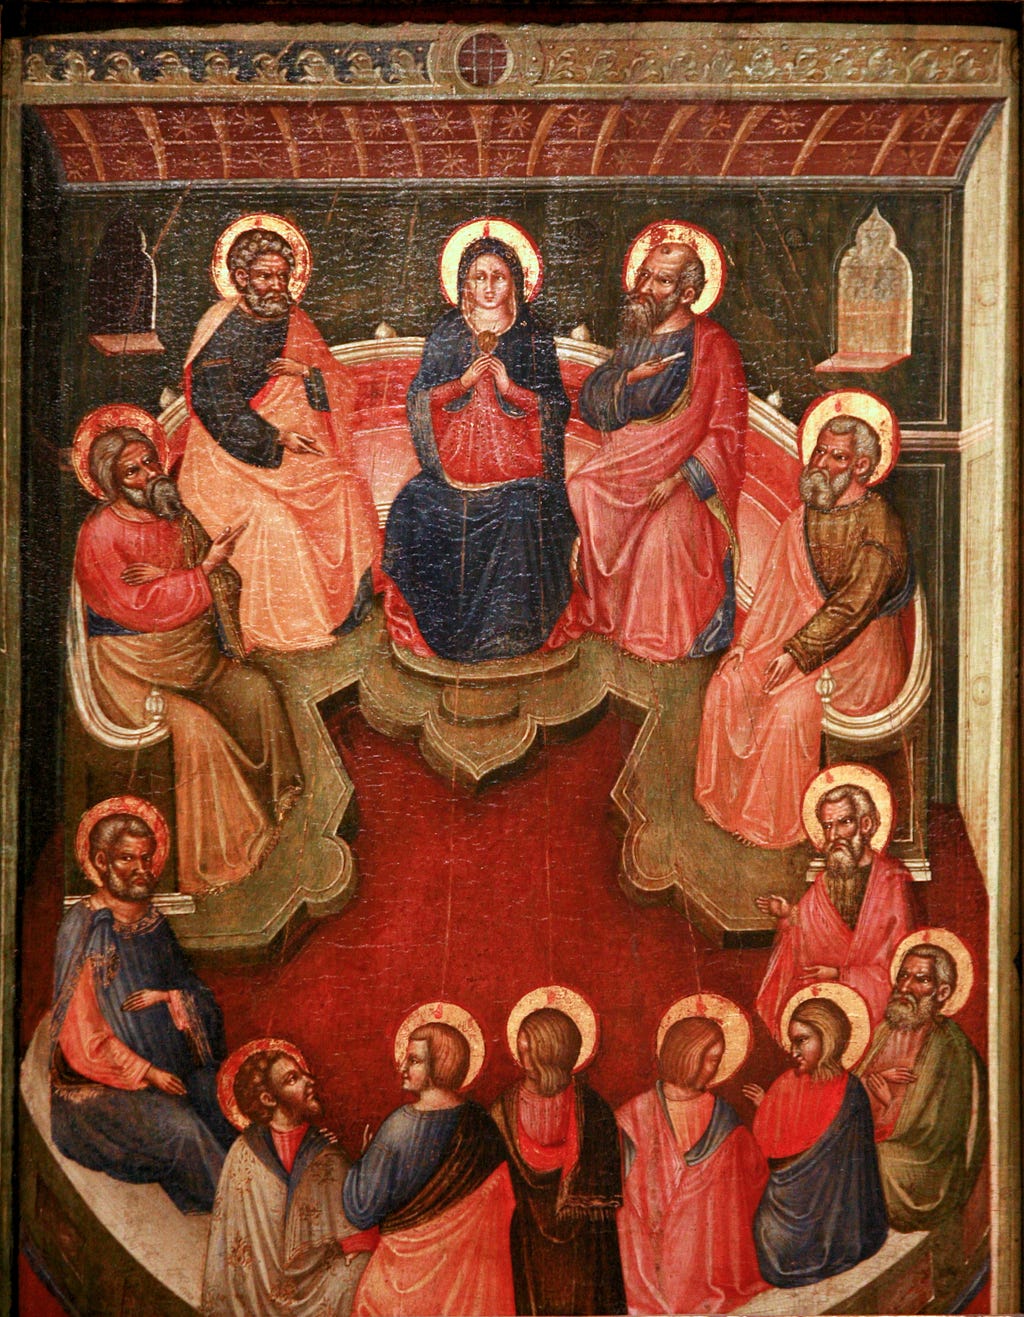 A Virgem Maria, vestida de azul, cercada pelos 12 apóstolos. Estão sentados e portam sobre a cabeça halos e um pequeno fogo